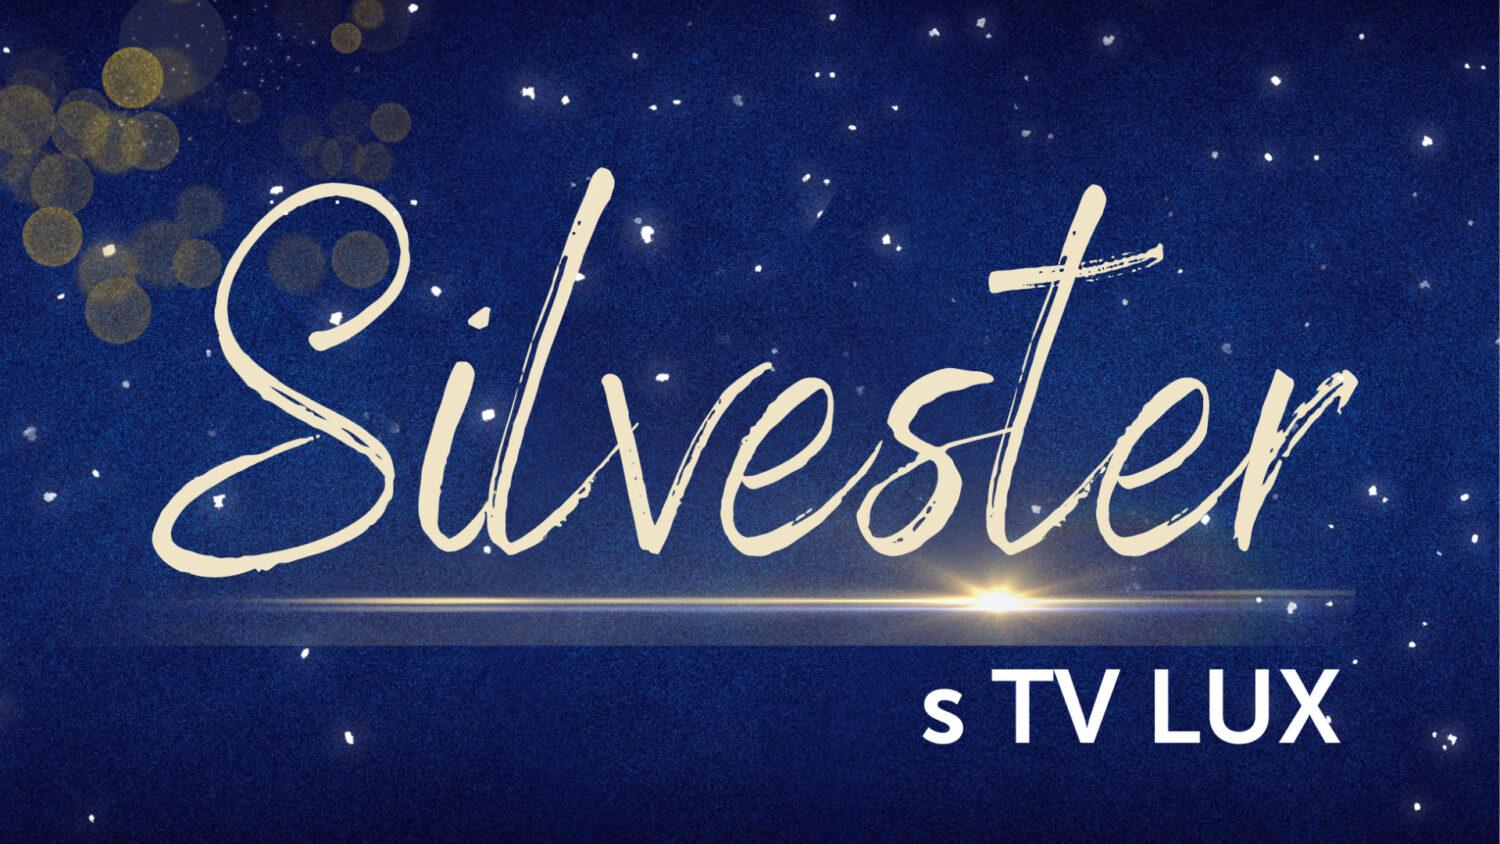 Oslávte Silvestra s TV LUX!